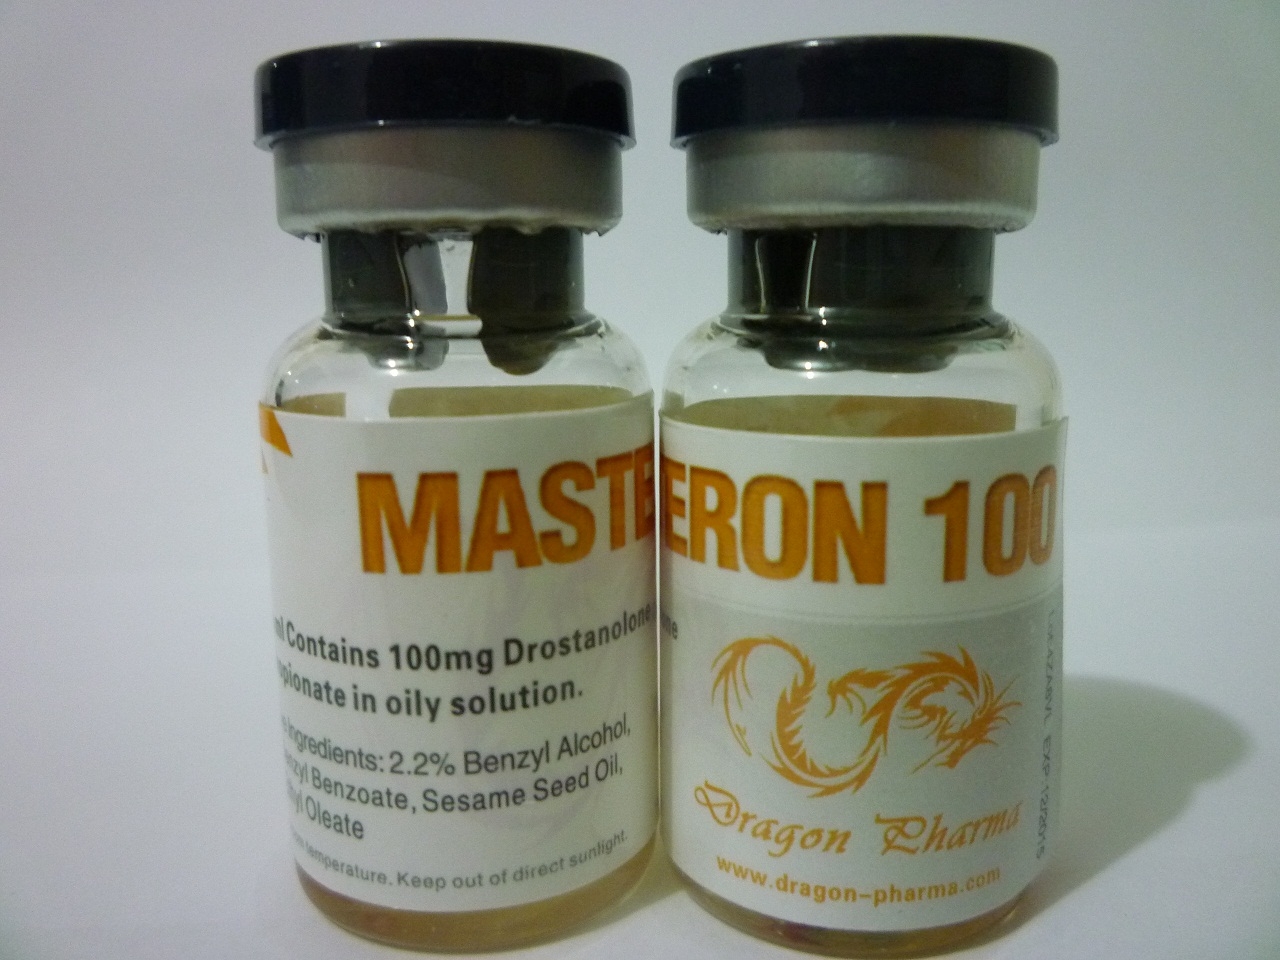 Masteron 100 (Drostanolone Propionate)